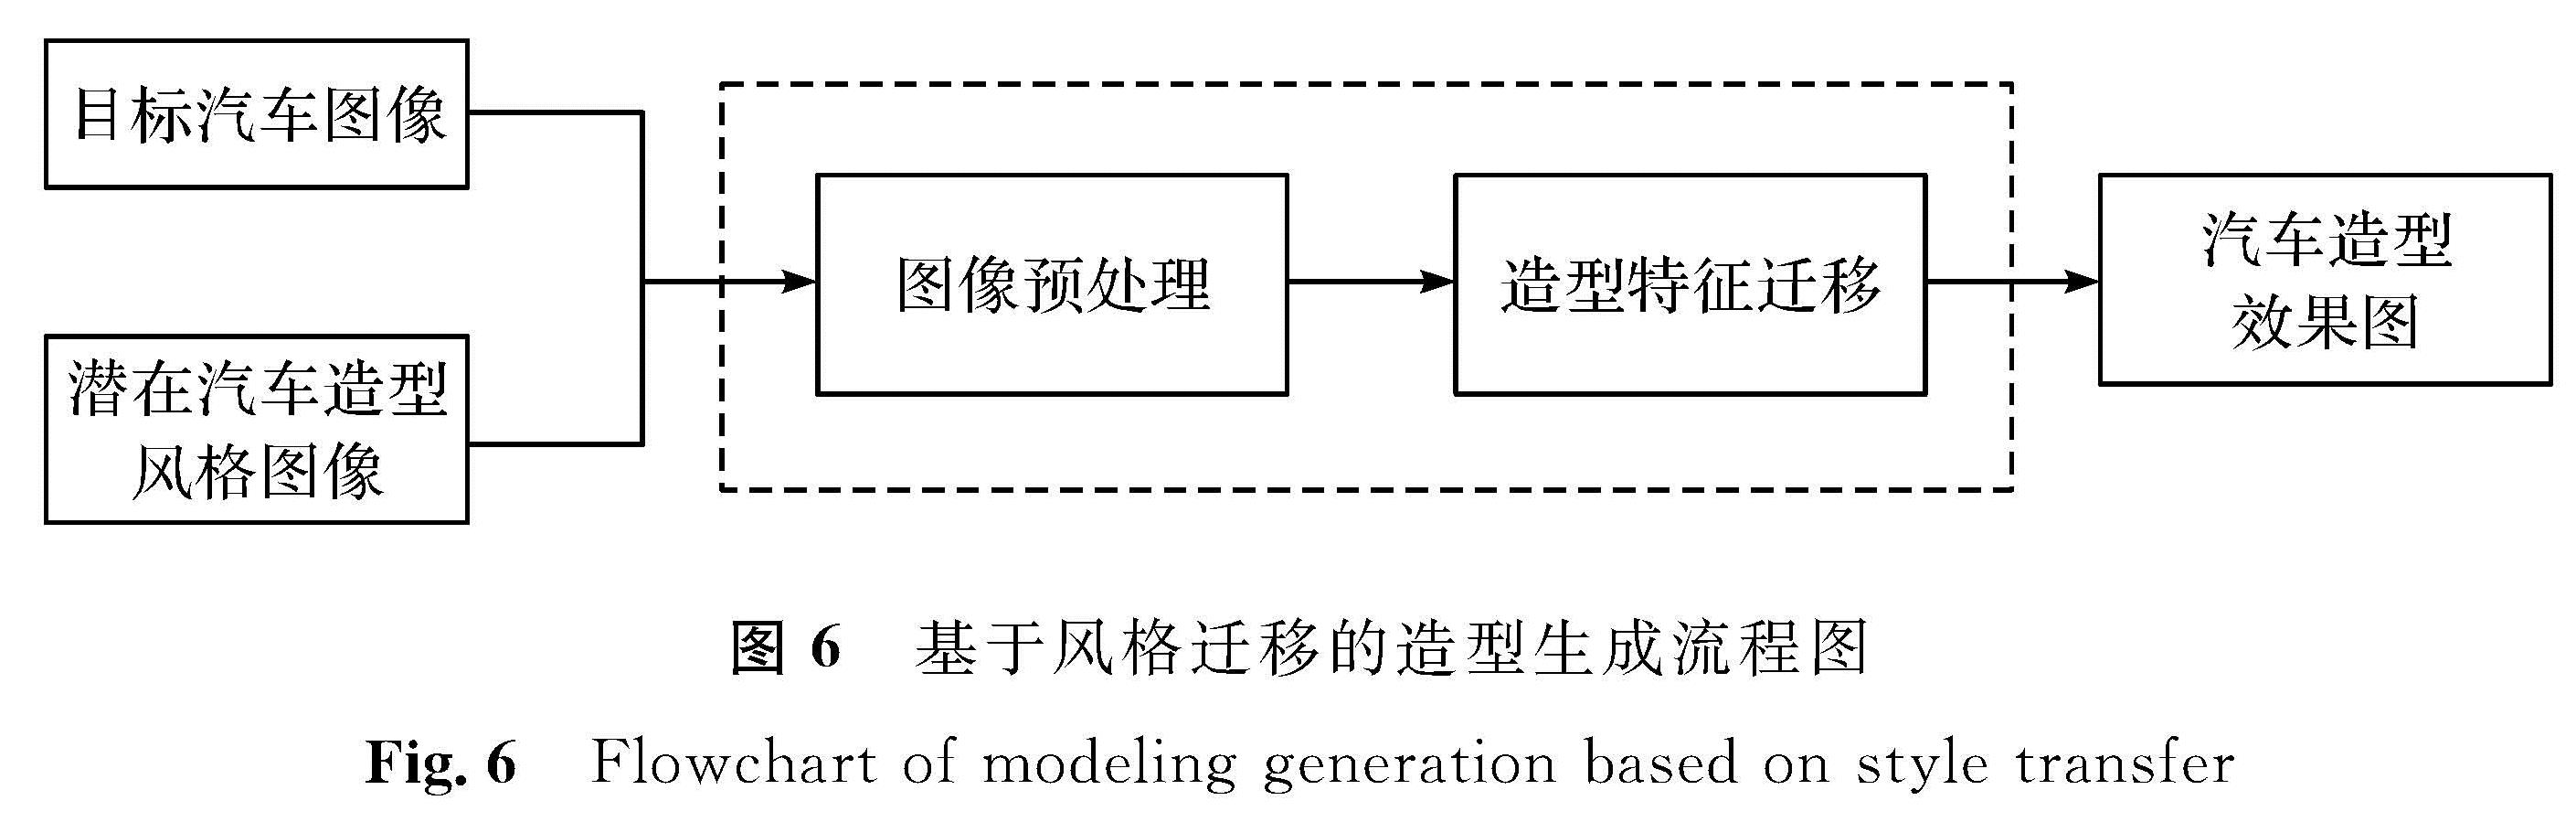 图6 基于风格迁移的造型生成流程图<br/>Fig.6 Flowchart of modeling generation based on style transfer